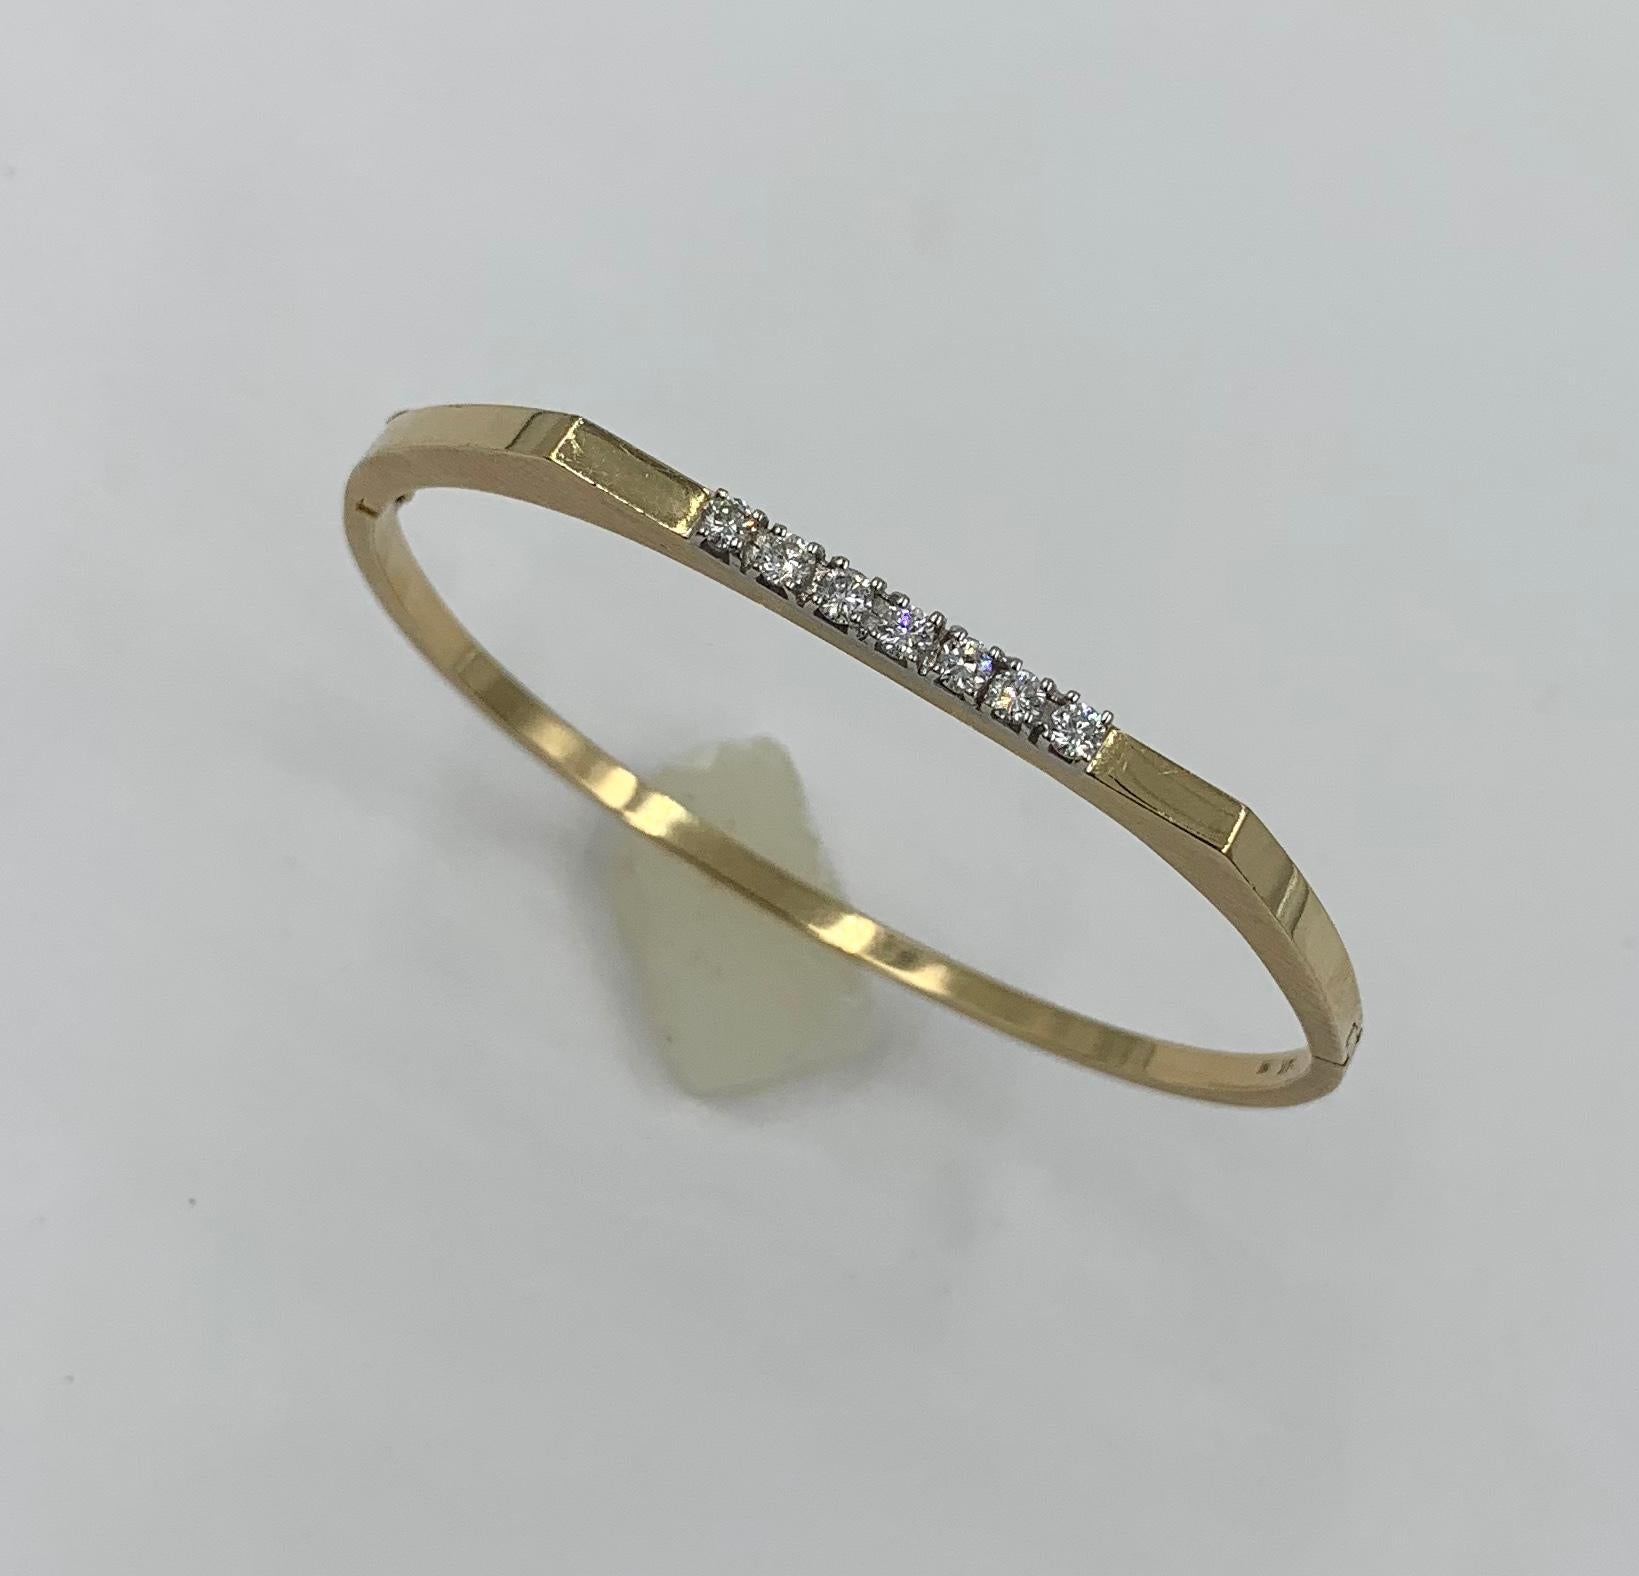 Ein wunderschönes und klassisches Mid-Century Modernes Armband aus 14 Karat Gelbgold, besetzt mit 7 funkelnden weißen Diamanten.   Das Armband verfügt über 7 wunderschöne weiße runde Diamanten im Brillantschliff, die insgesamt etwa 0,56 Karat haben.